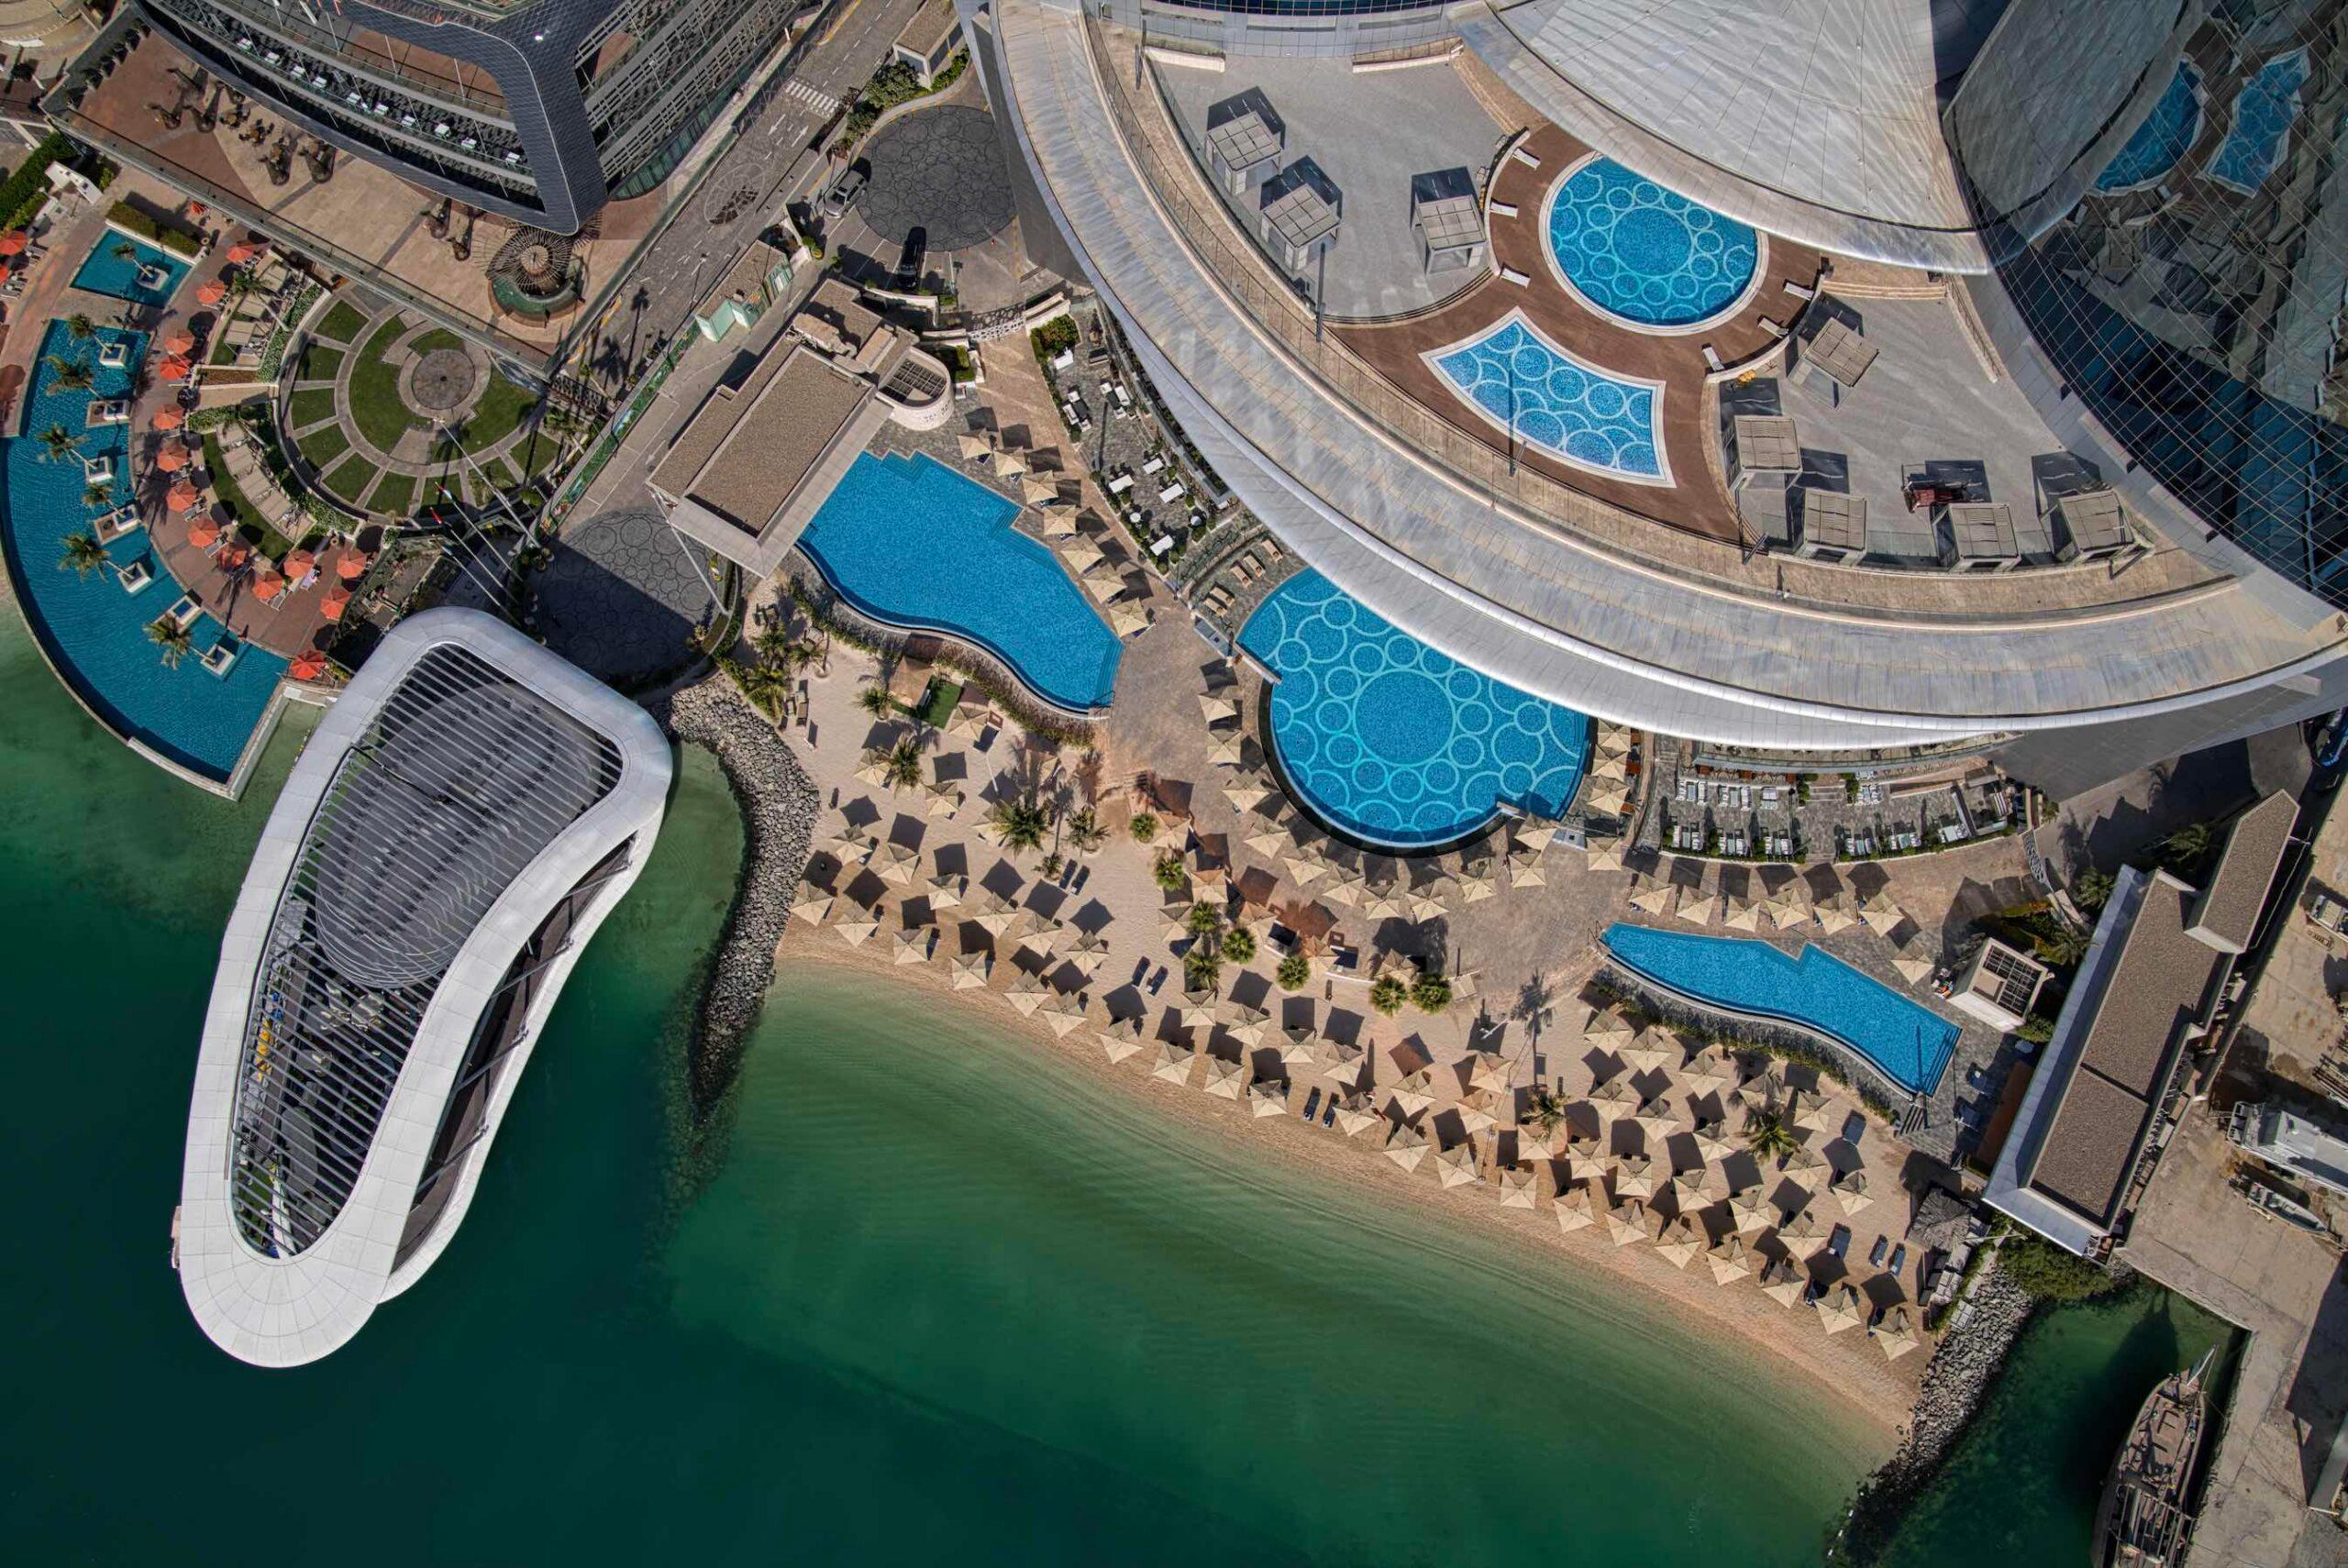 Conrad Abu Dhabi Etihad Towers: The jewel in the crown of the Corniche